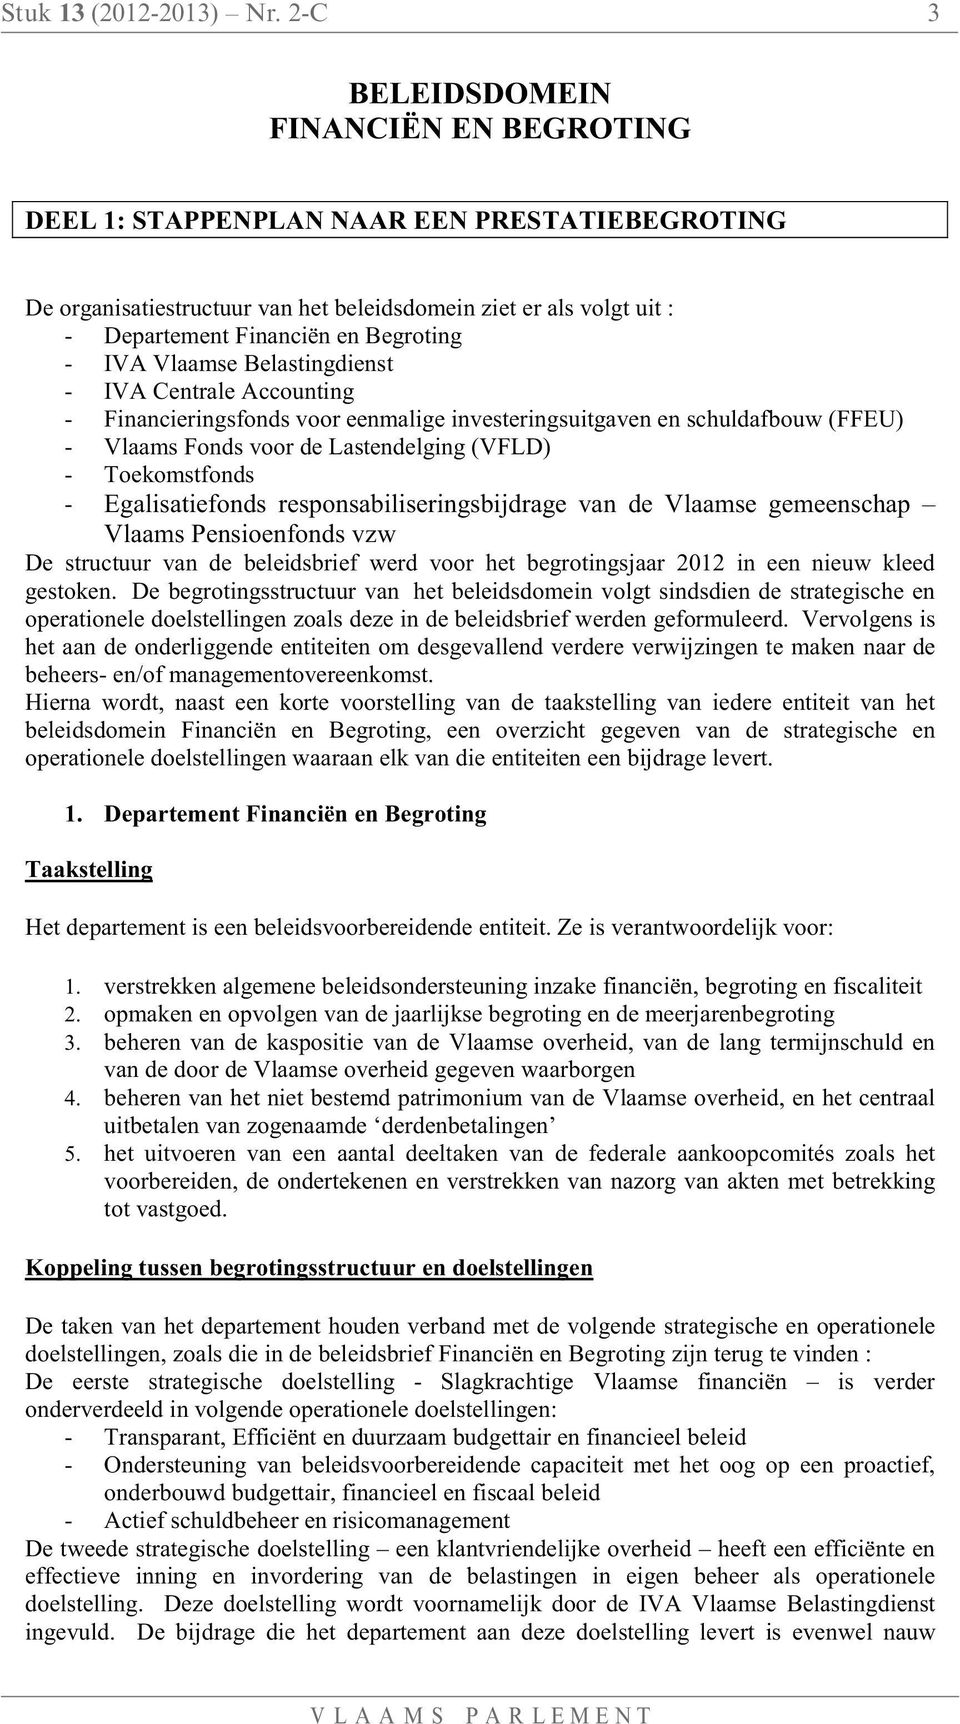 IVA Vlaamse Belastingdienst - IVA Centrale Accounting - Financieringsfonds voor eenmalige investeringsuitgaven en schuldafbouw (FFEU) - Vlaams Fonds voor de Lastendelging (VFLD) - Toekomstfonds -